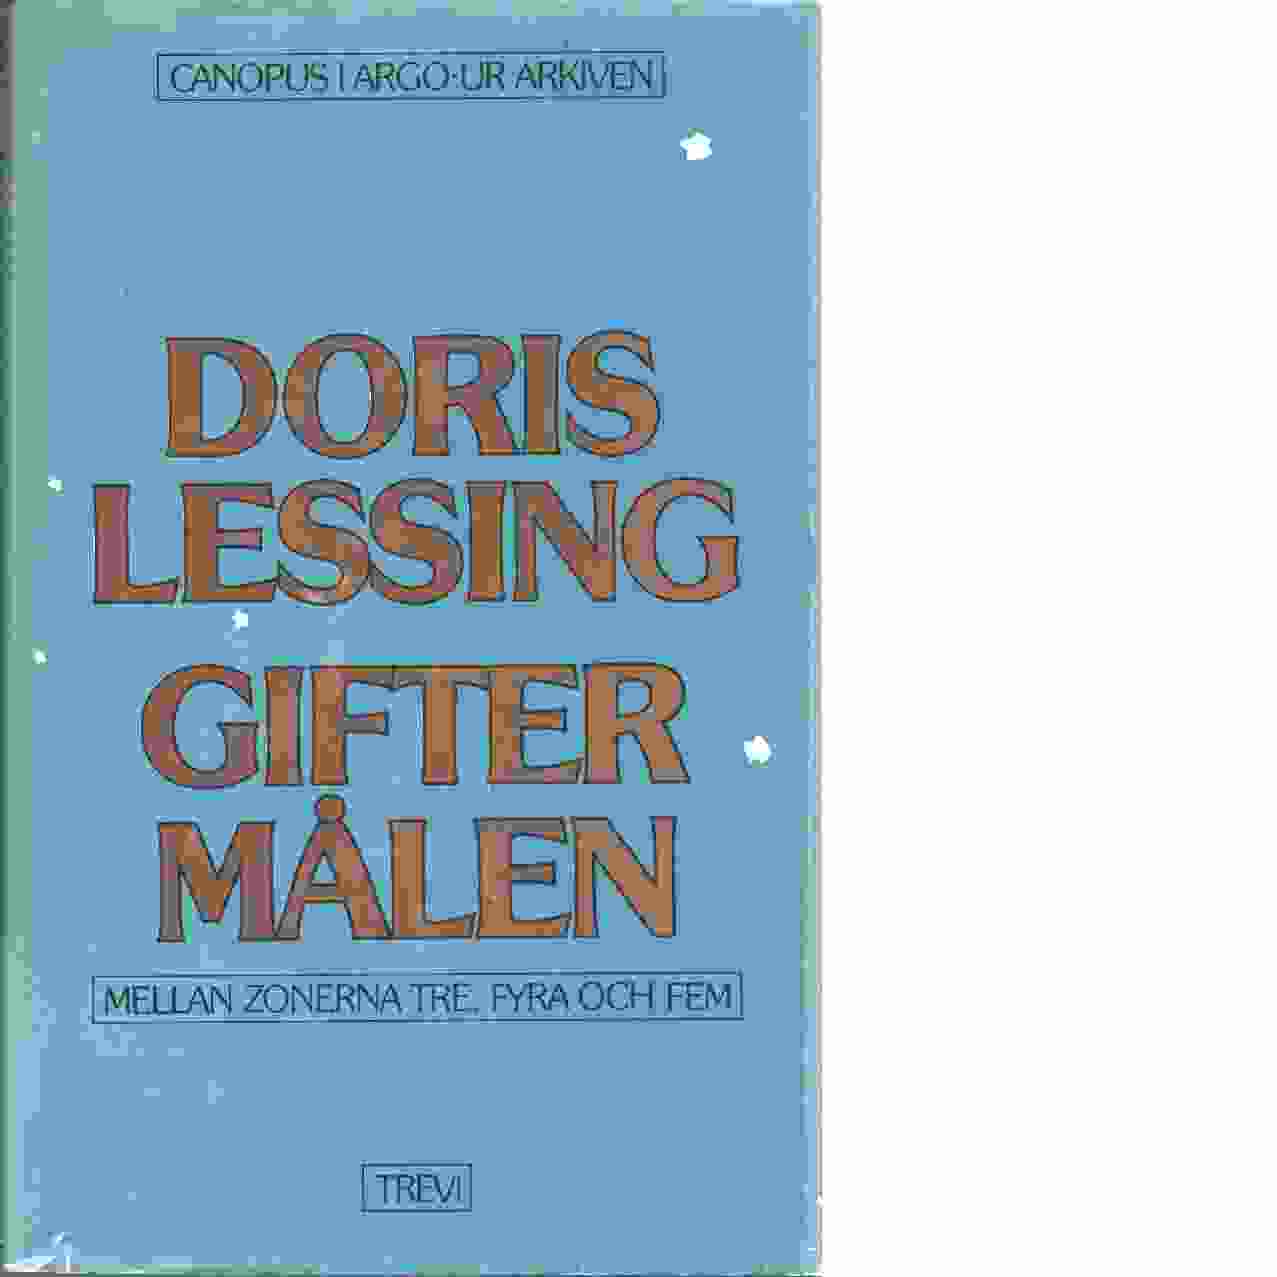 Giftermålen mellan zonerna tre, fyra och fem : berättat av krönikörerna i zon tre - Lessing, Doris